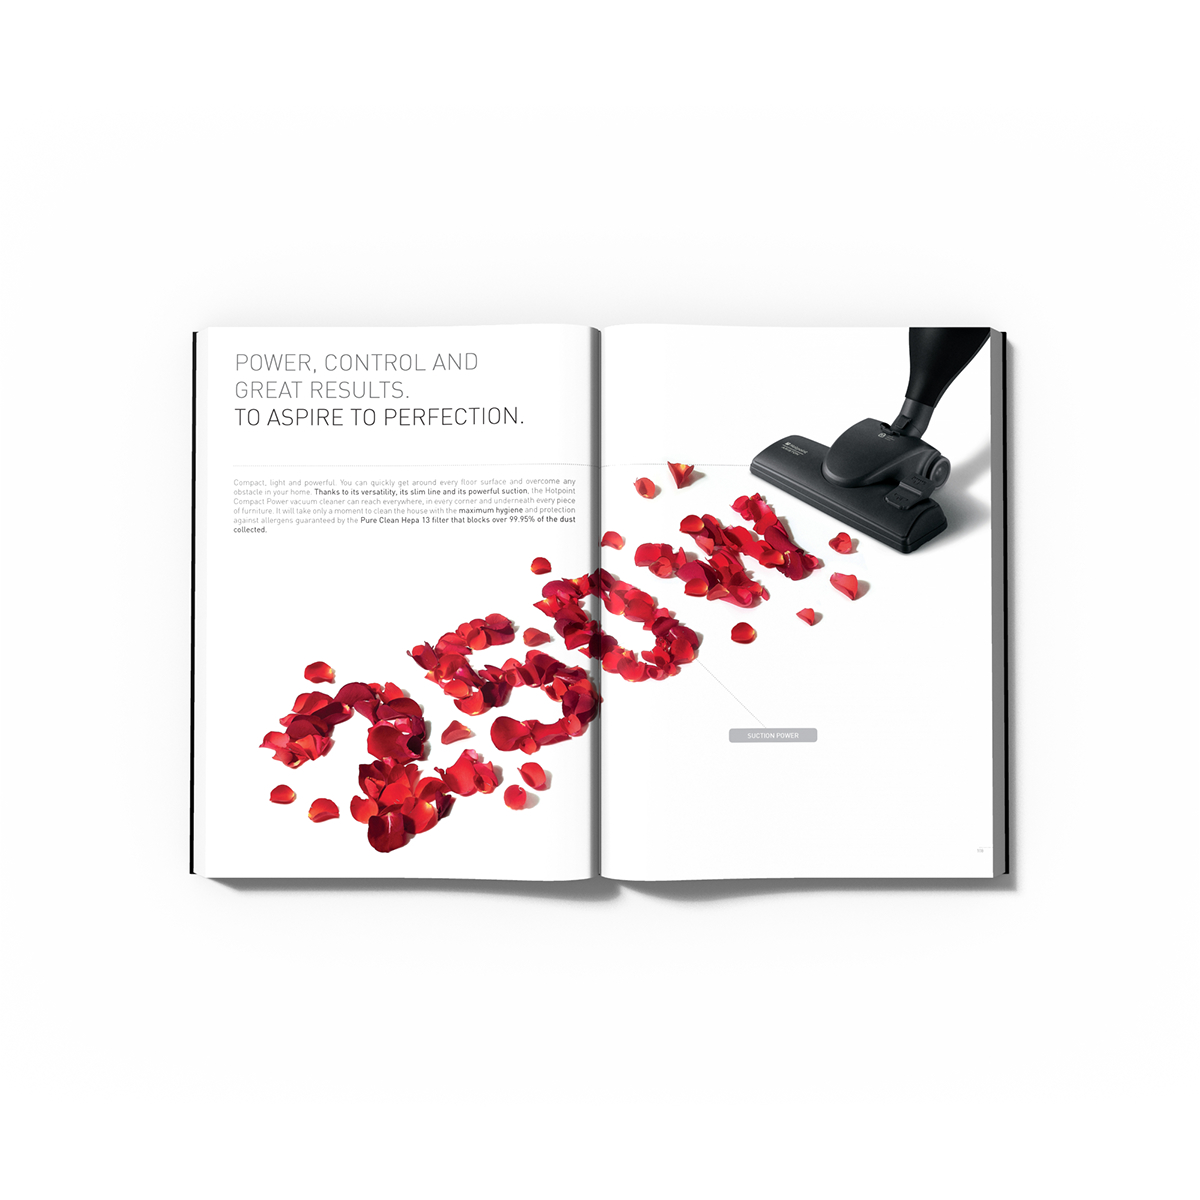 hotpoint catalogo SDA smalldomesticappliances Btl design 3D Icondesign digitalphotography ArtDirection